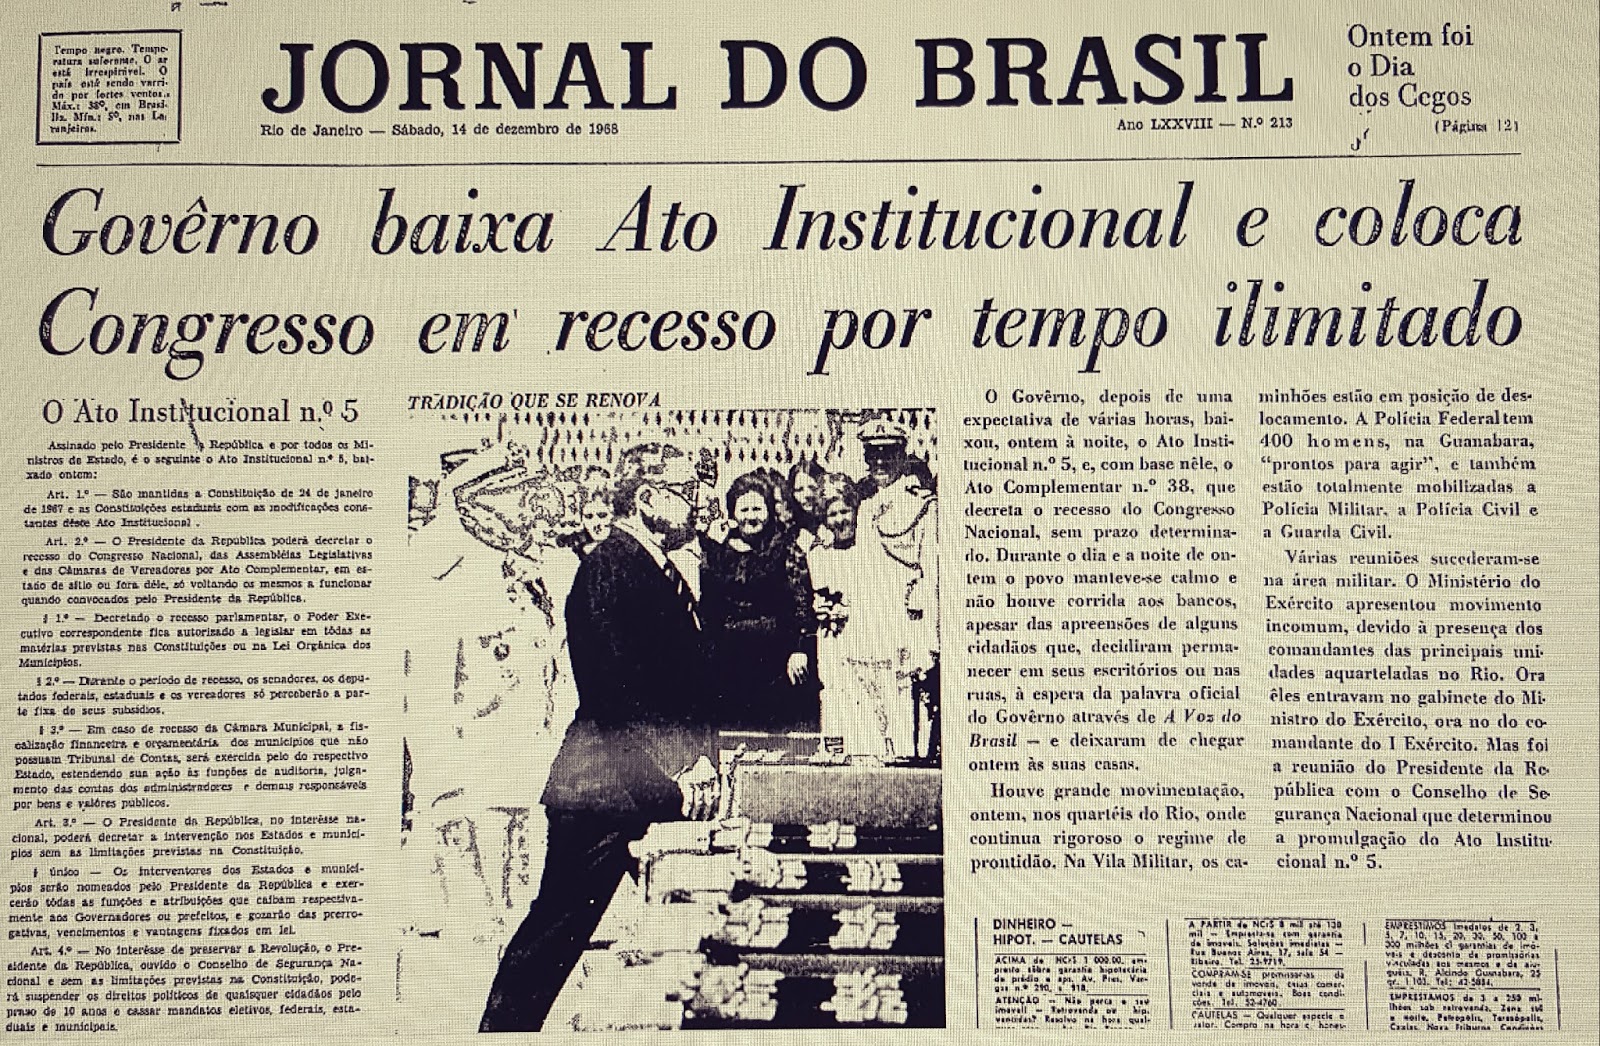 Entenda o que foi o Golpe Militar ocorrido no Brasil em 31 de março de 64